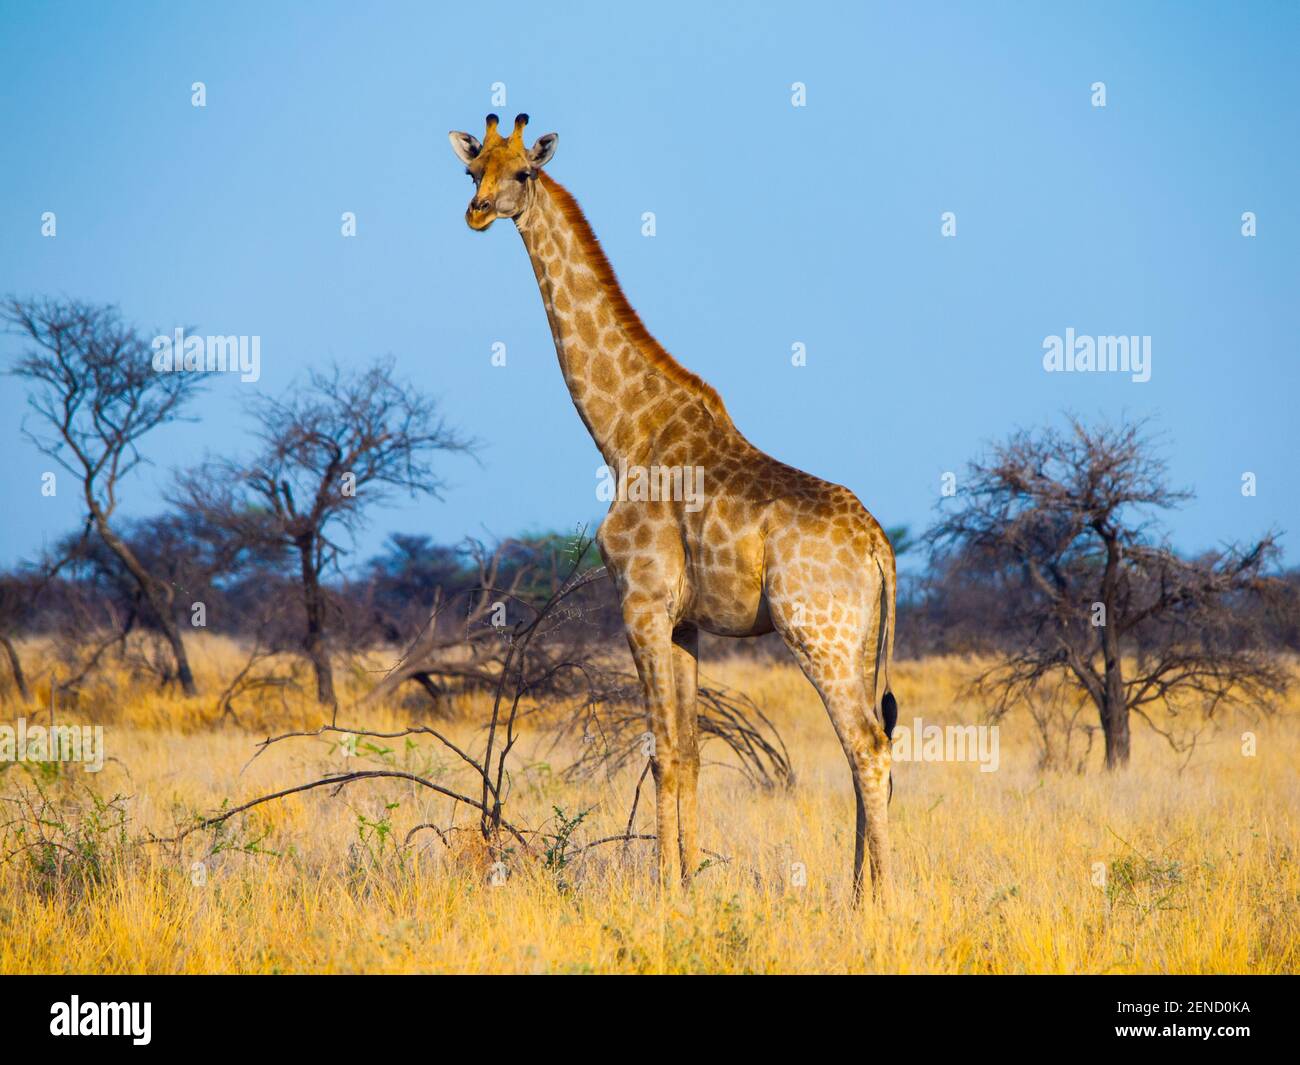 Standing giraffe in savanna Stock Photo